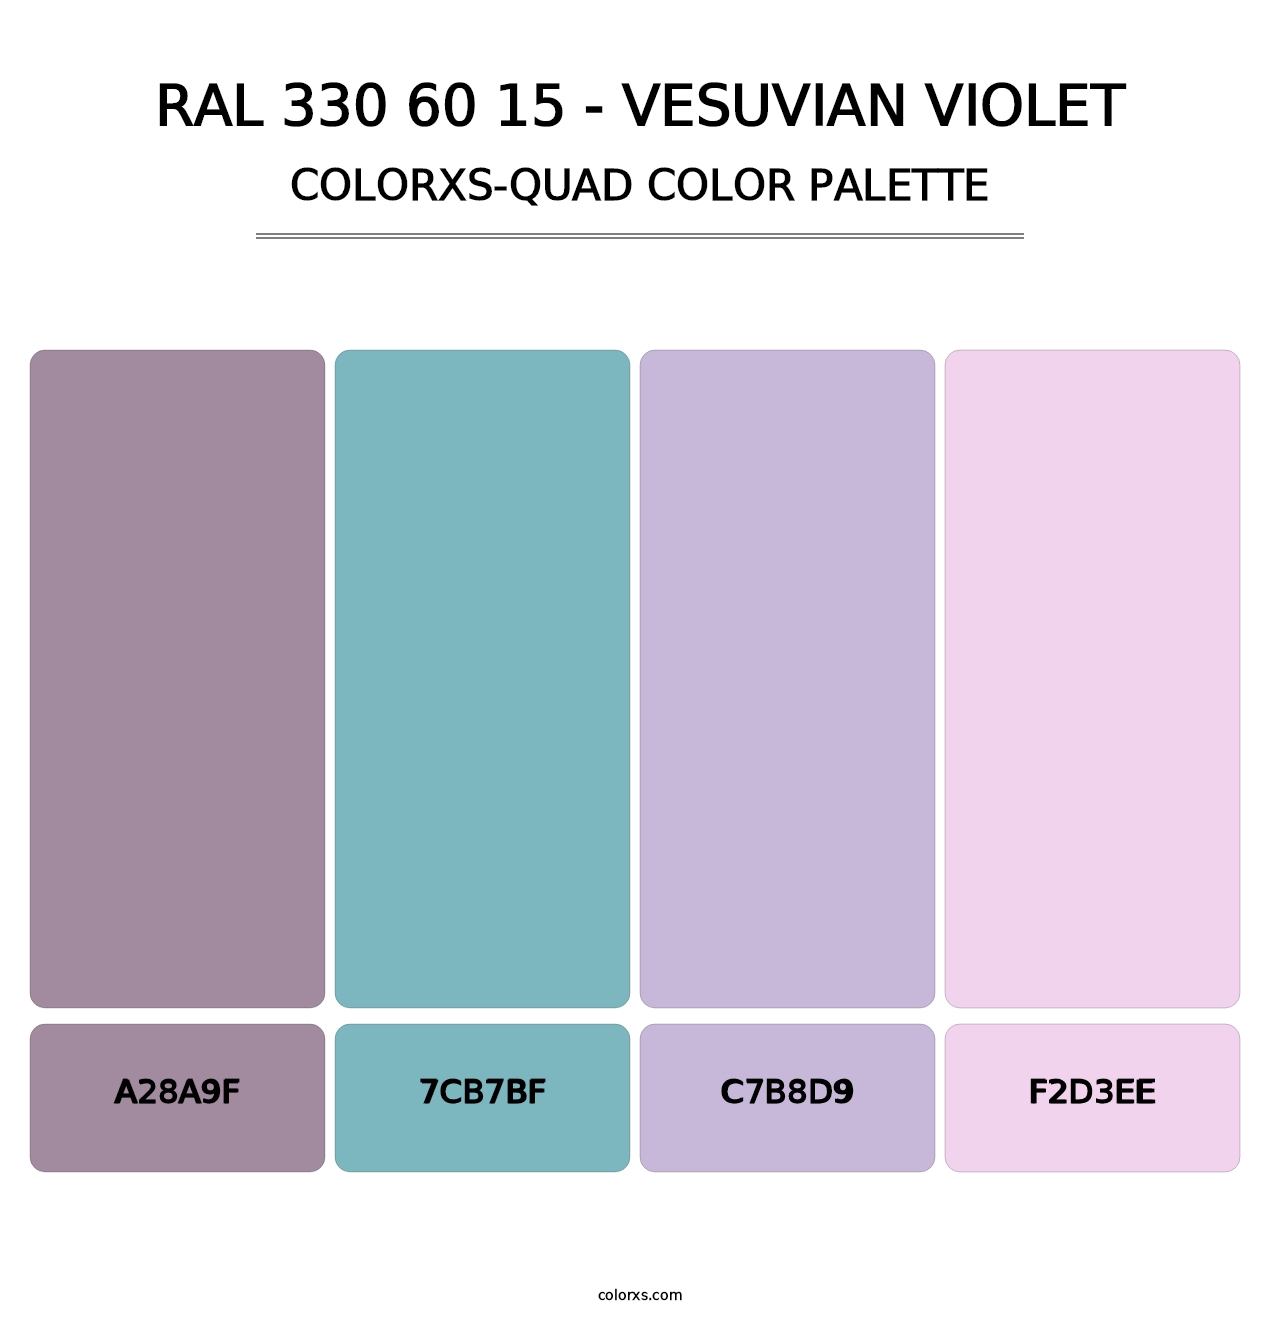 RAL 330 60 15 - Vesuvian Violet - Colorxs Quad Palette